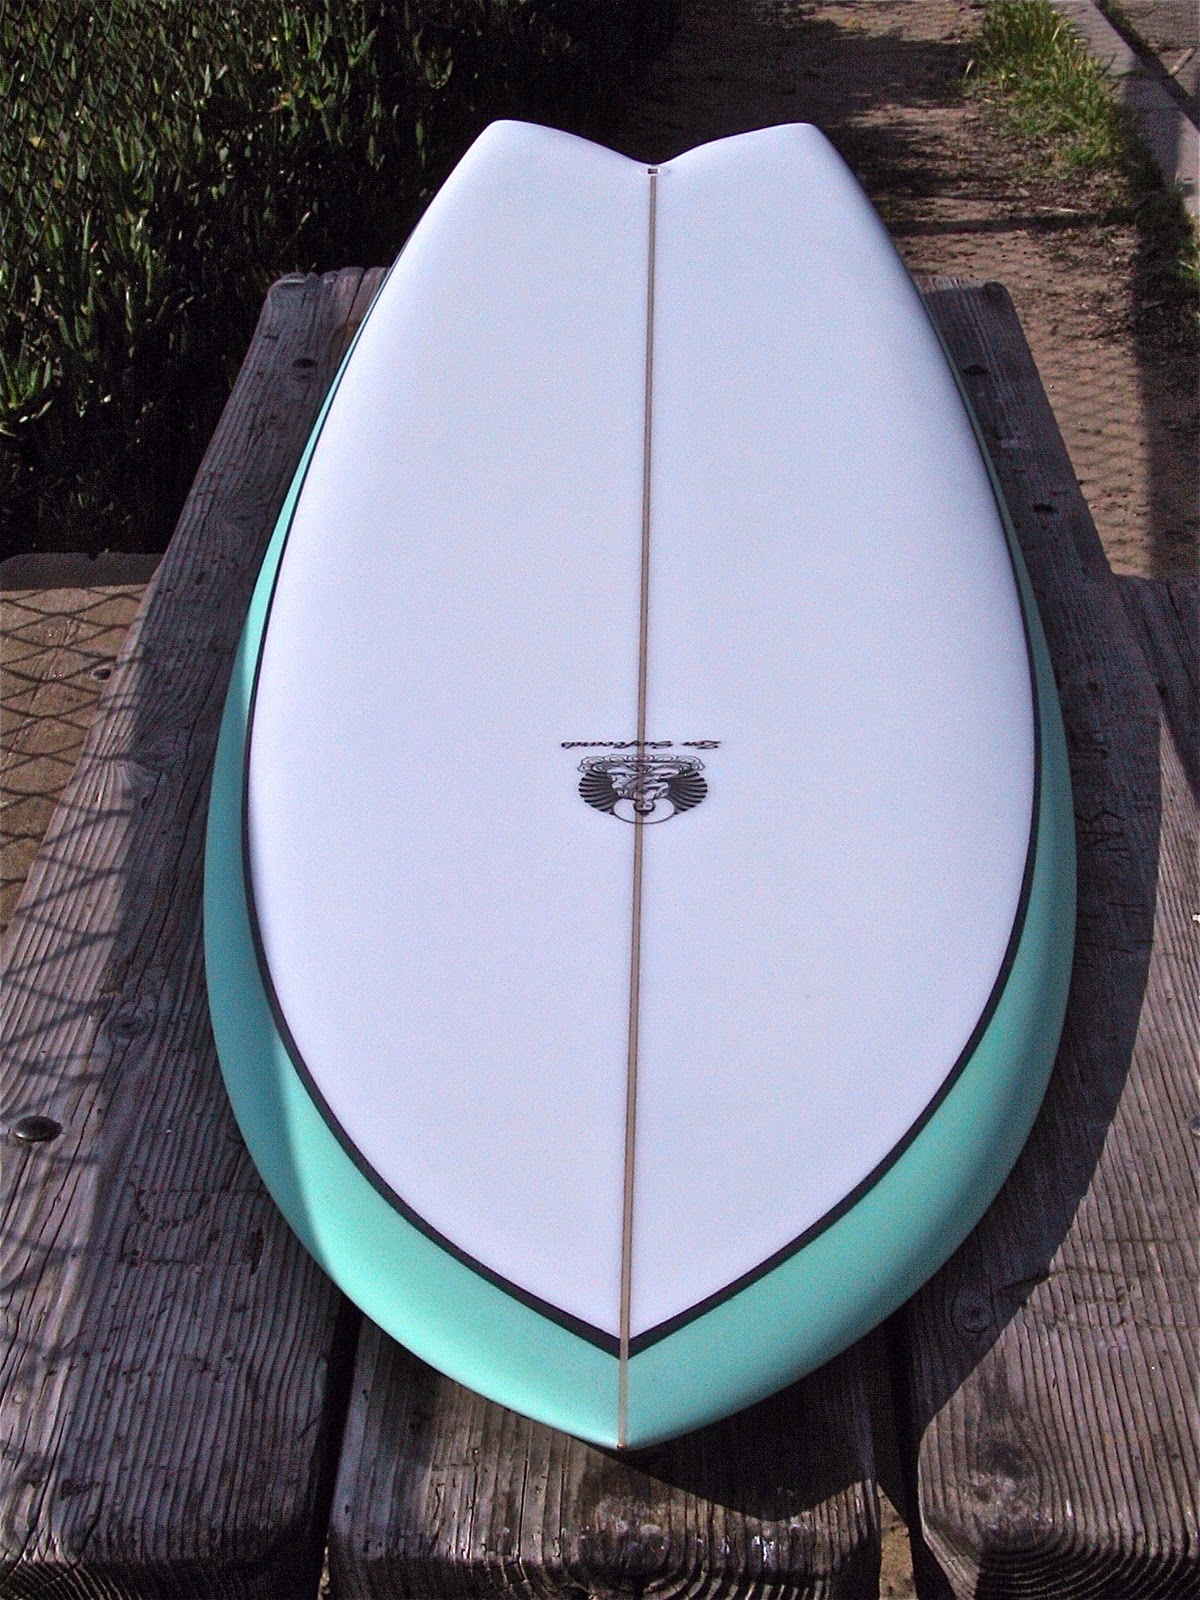 Keel fish surfboard